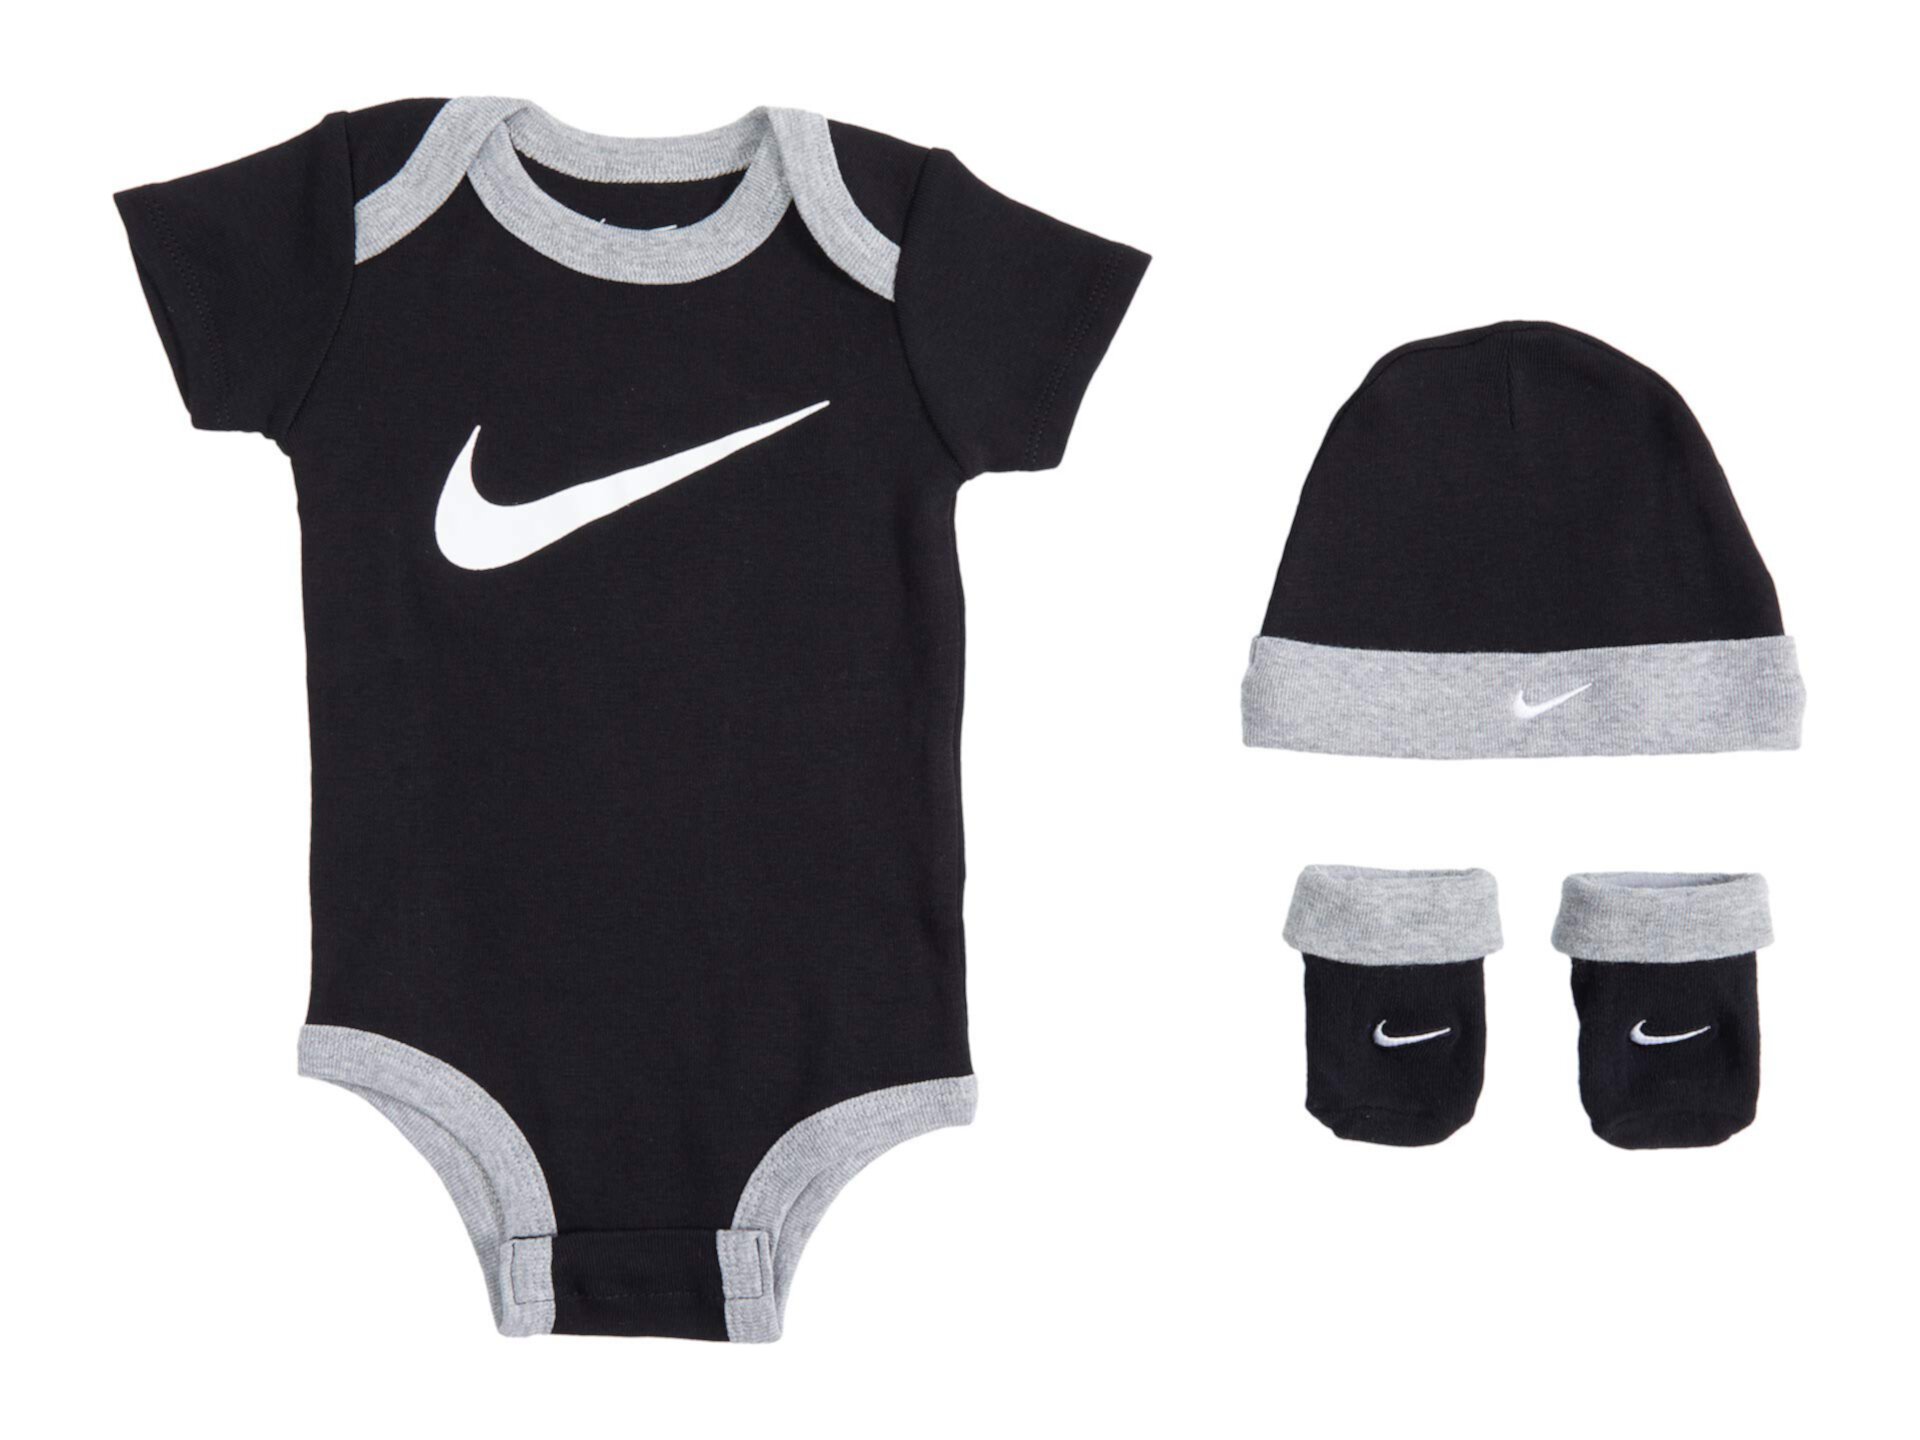 Комплект из трех предметов боди, шляпы и пинеток в подарочной коробке (для младенцев) Nike Kids